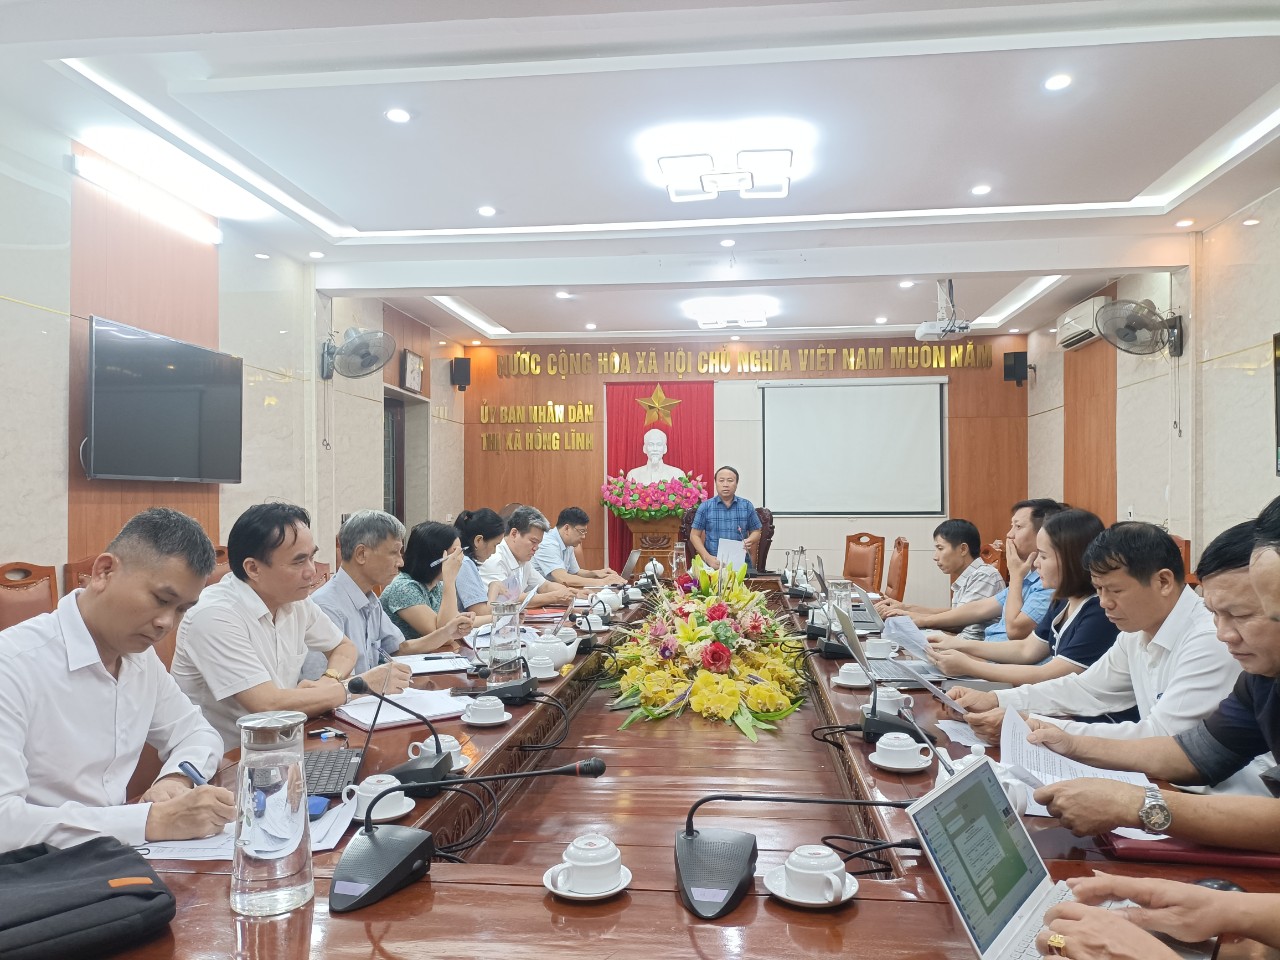 Đoàn giám sát Thường trực HĐND thị xã Hồng Lĩnh, Hà Tĩnh làm việc với UBND và các phòng, ngành về đầu tư xây dựng cơ bản năm 2022 - ẢNH BÌNH NGUYÊN